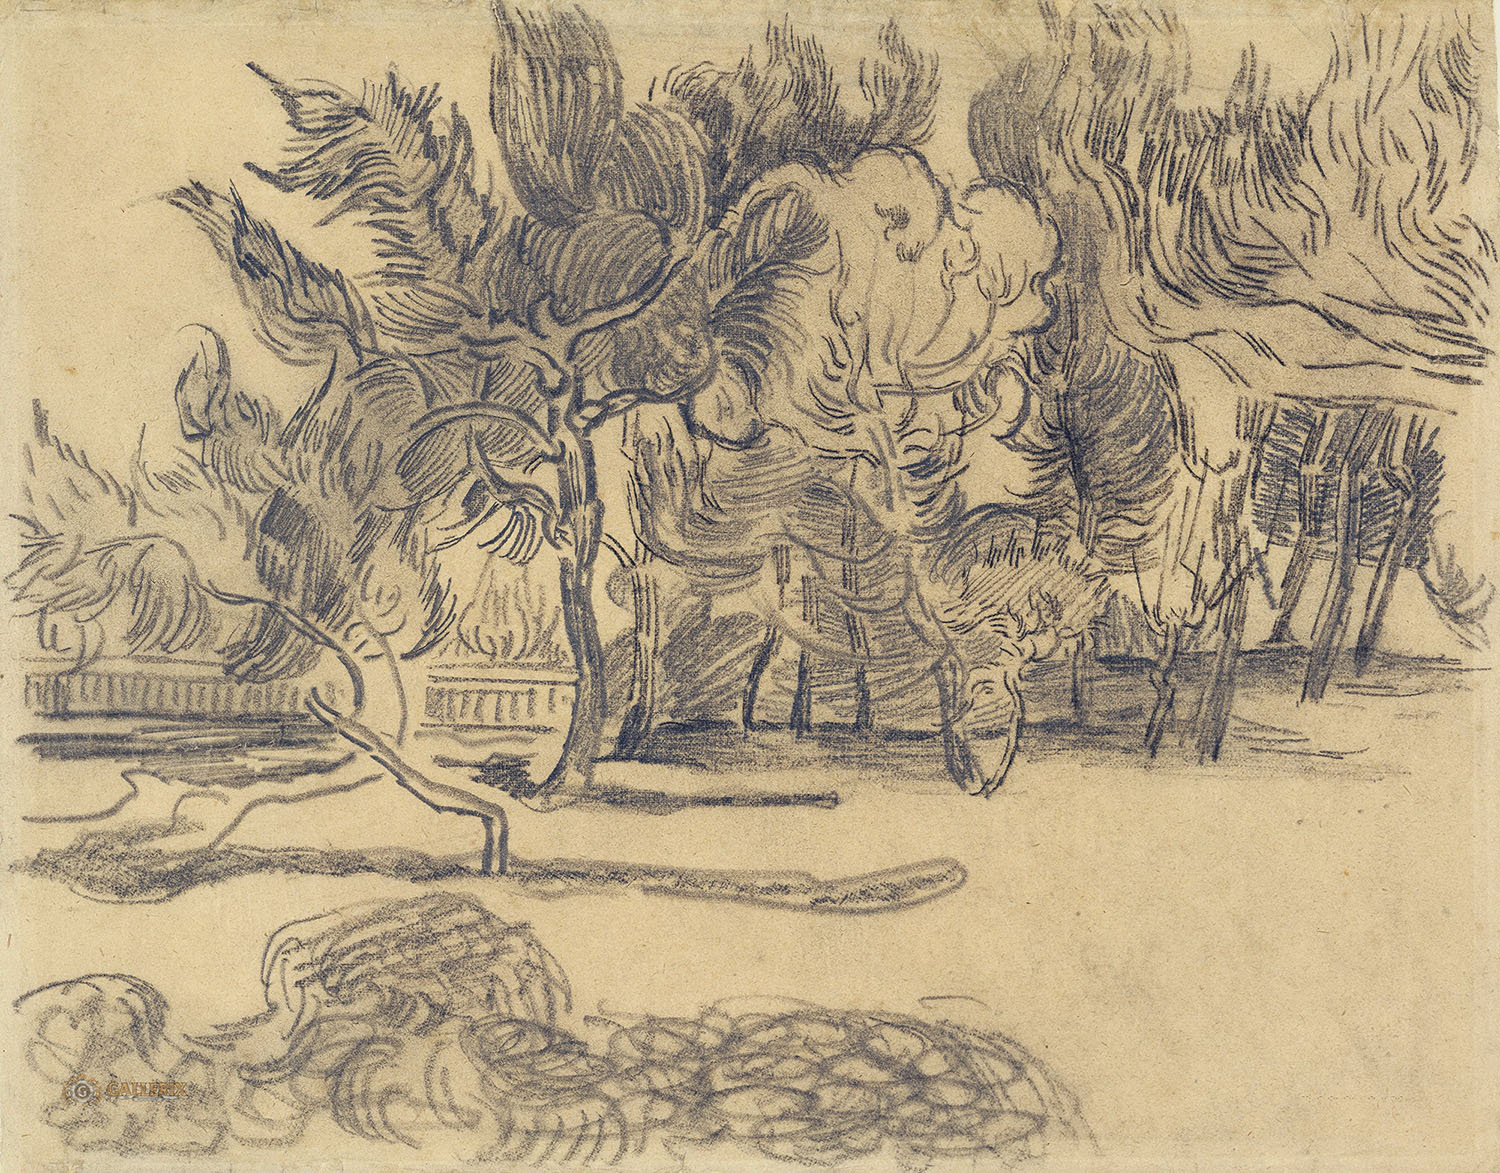 Винсент Ван Гог. "Сосны и стена в саду лечебницы". 1889. Музей Ван Гога, Амстердам.